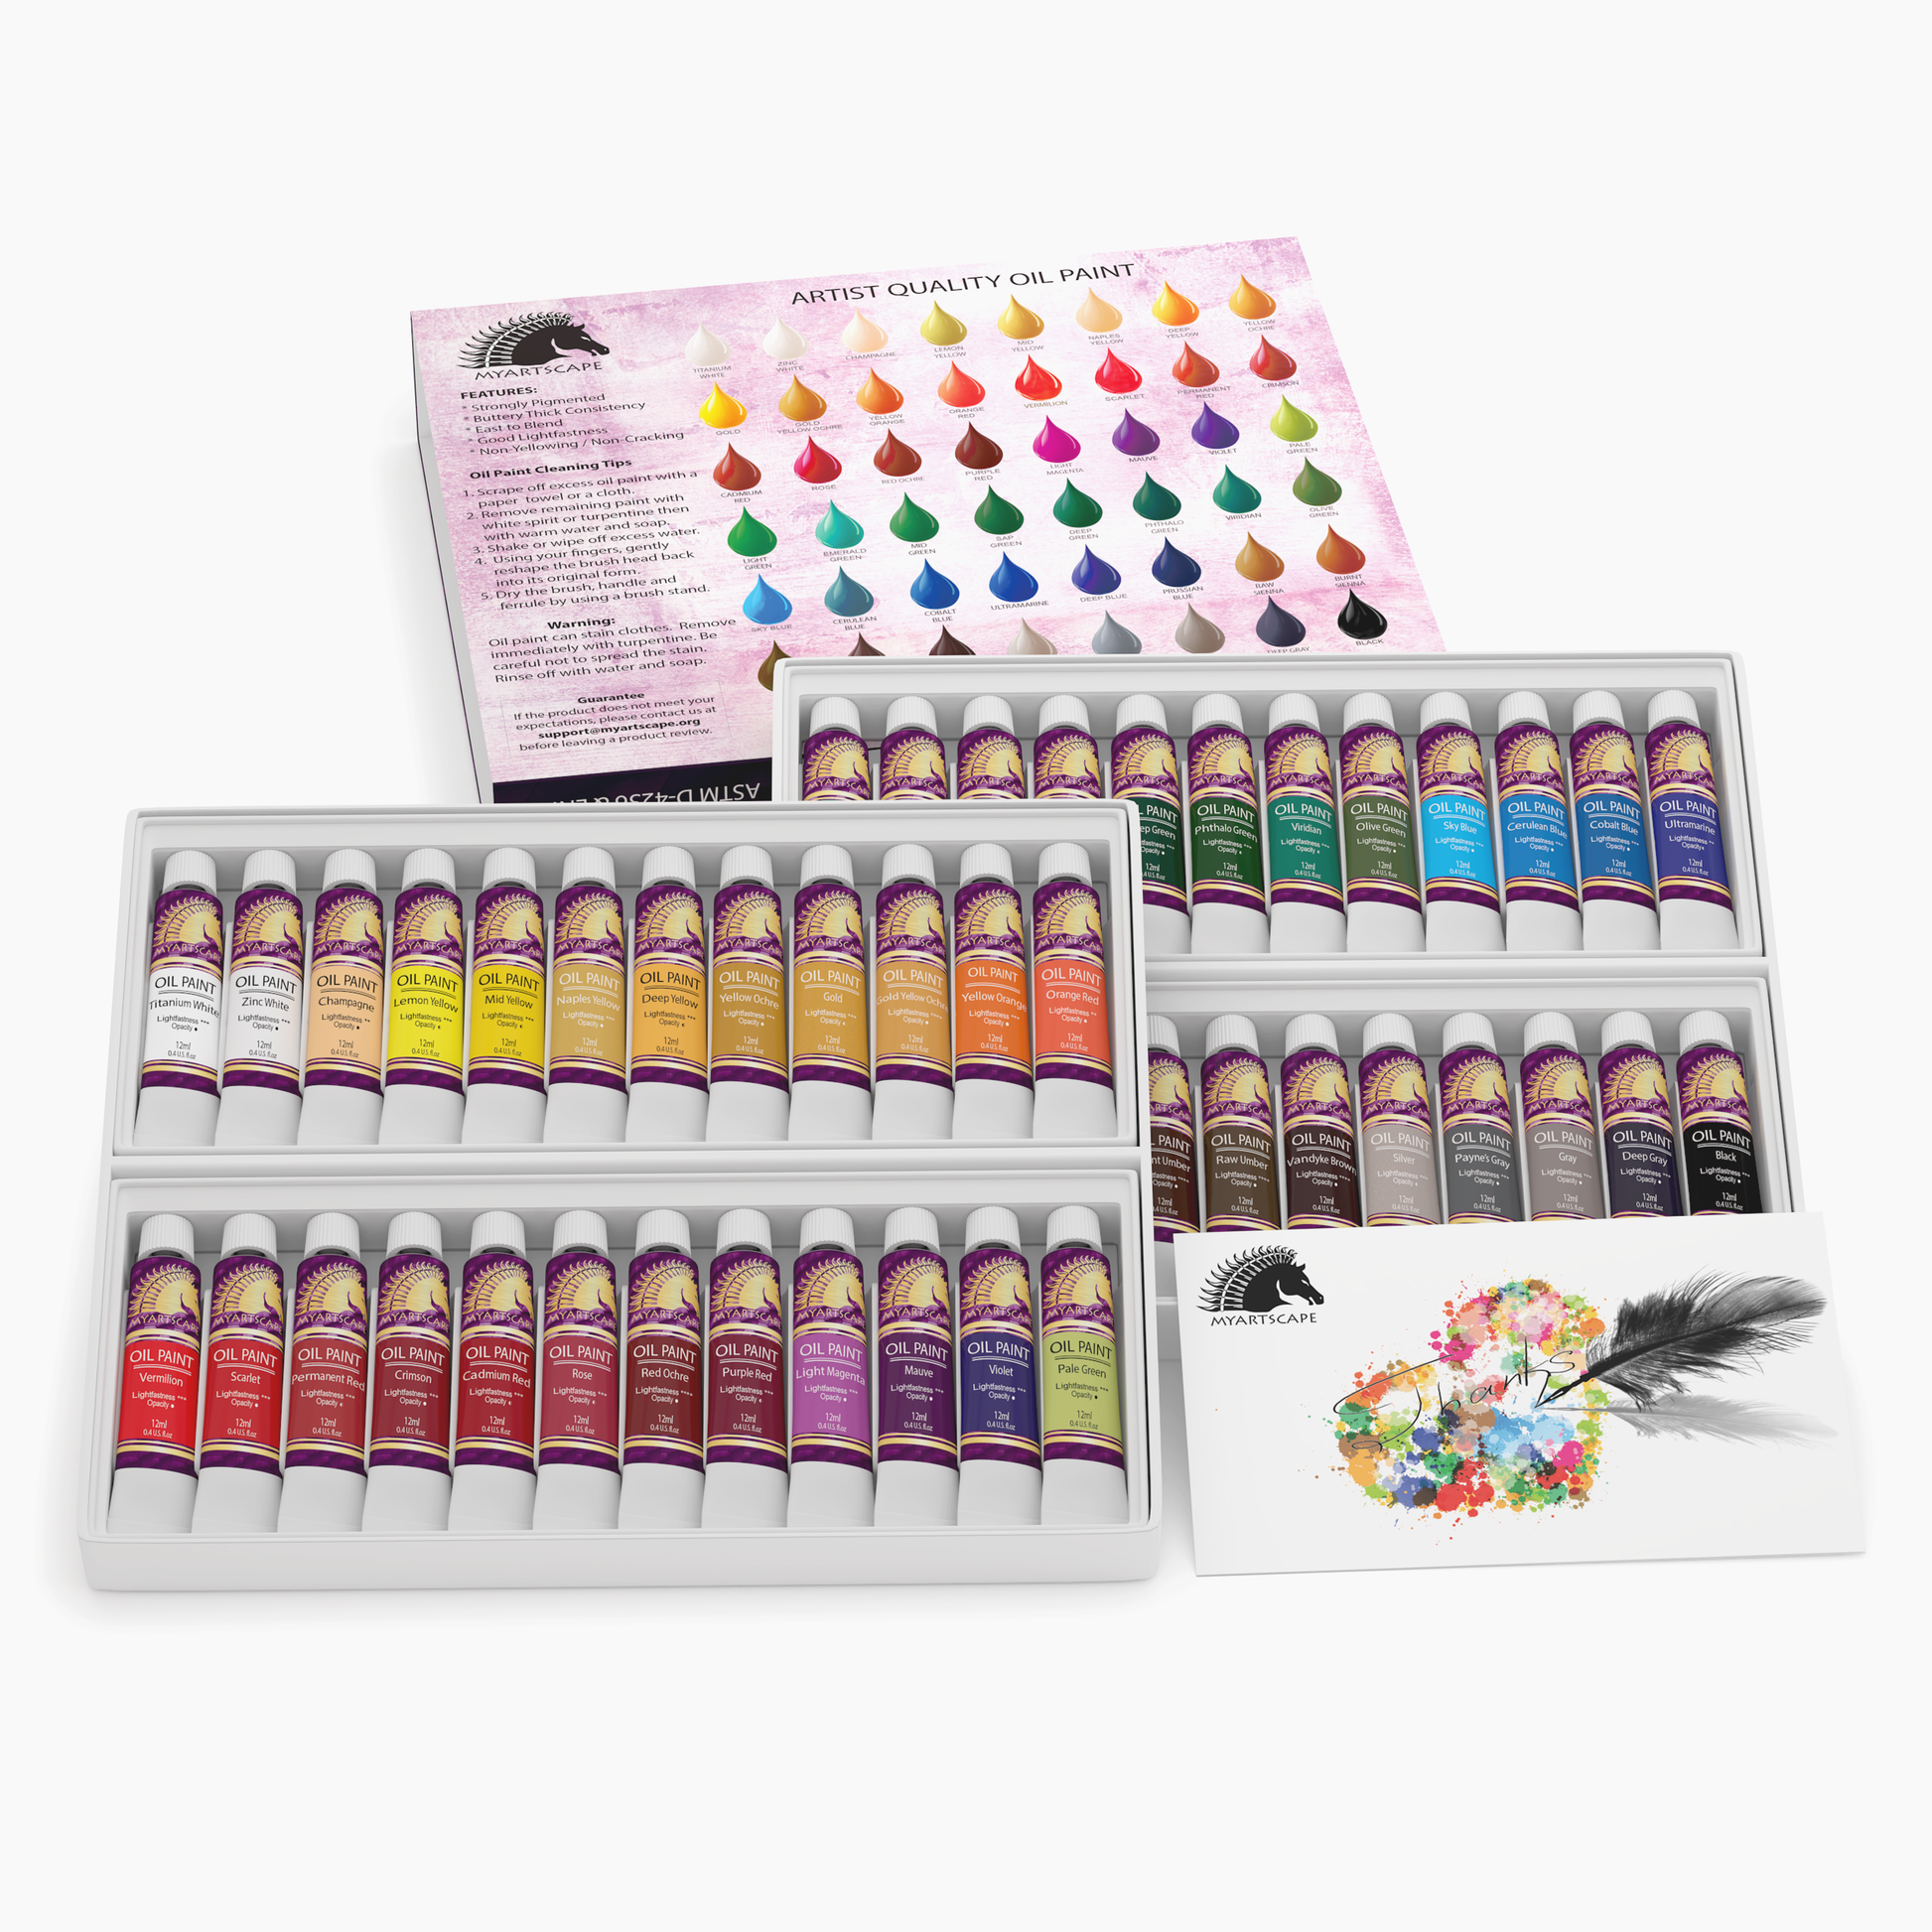 Watercolor Paint Set, 12ml Tubes - 24 Colors – MyArtscape